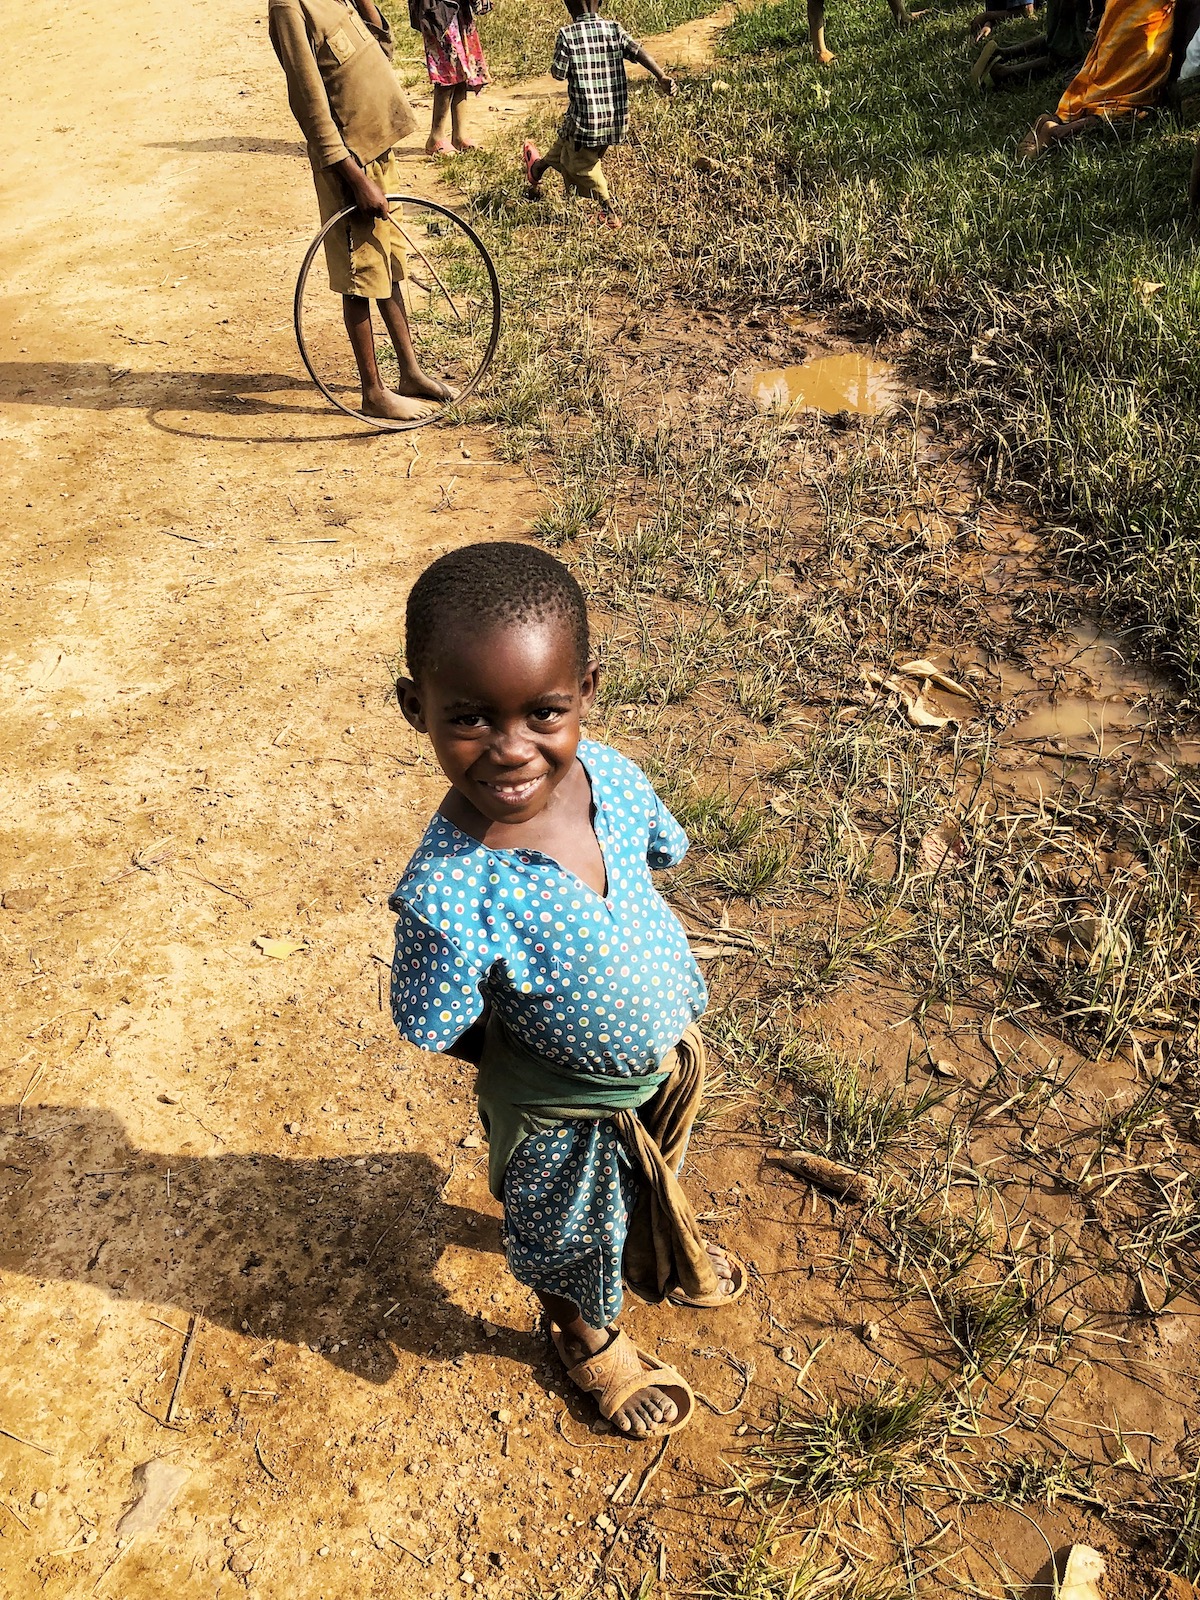 Cute little boy in a village in Uganda.